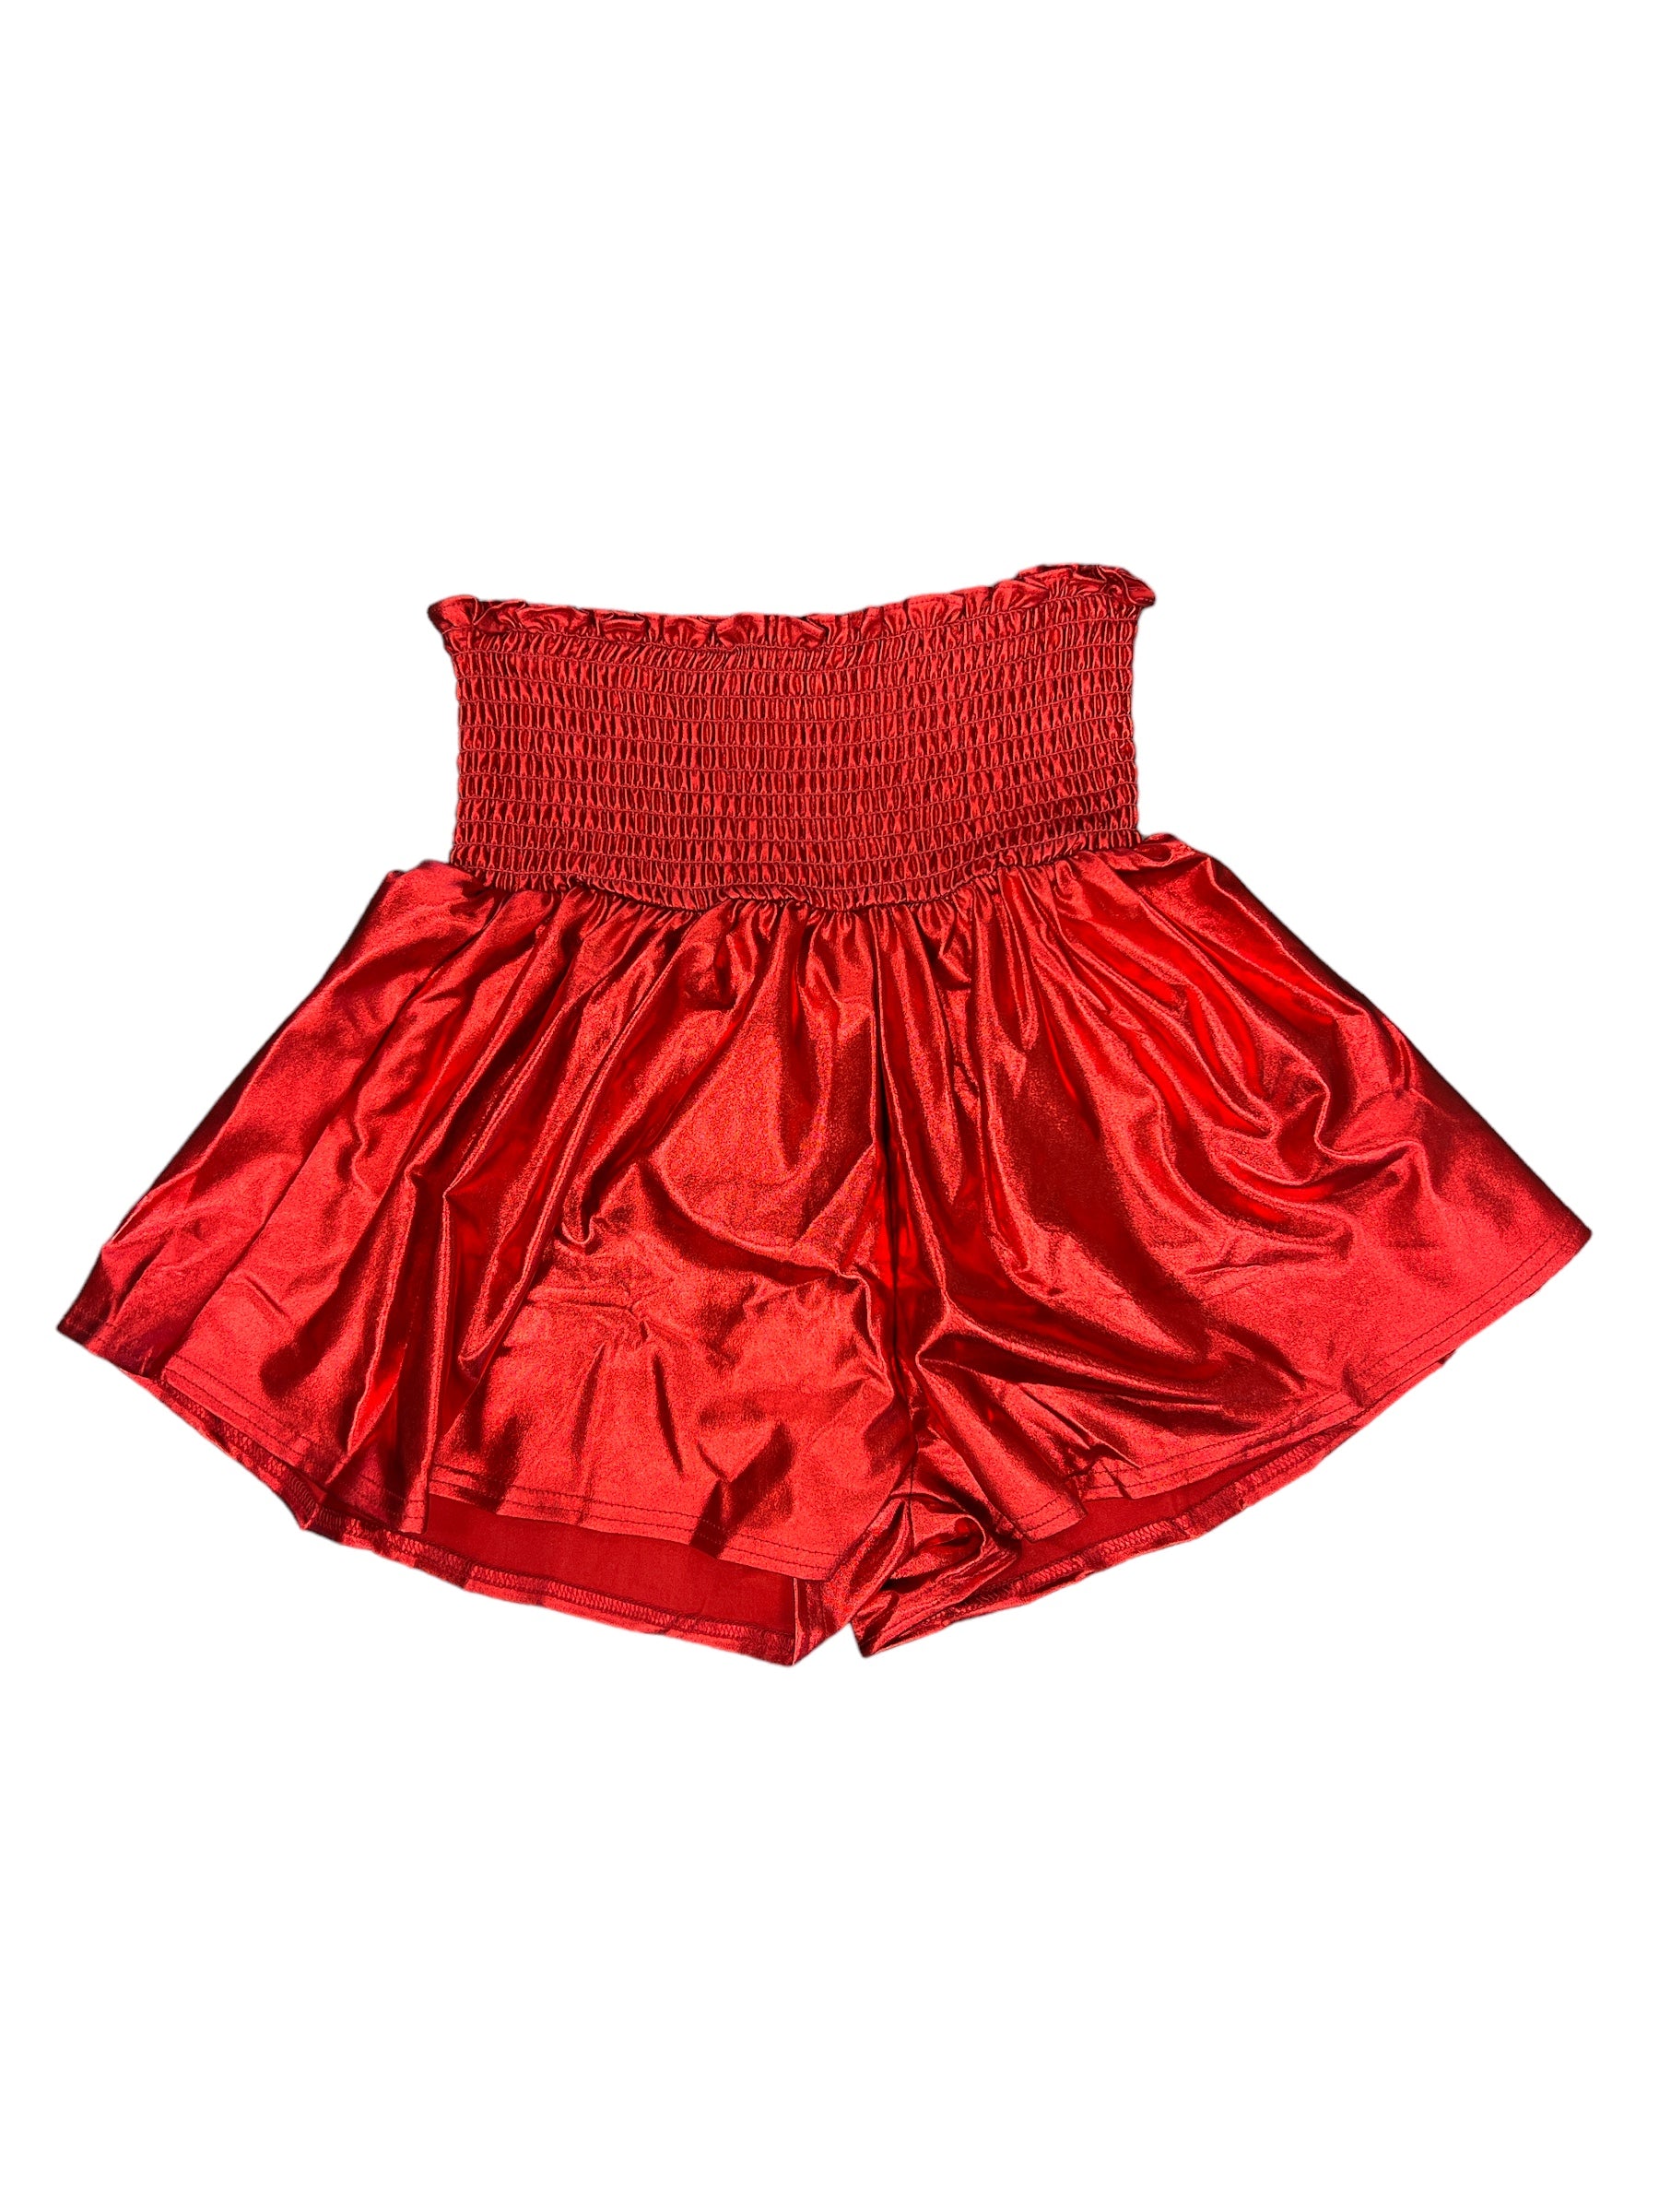 Smocking Waist Shorts-220 Skirts/Shorts-Simply Stylish Boutique-Simply Stylish Boutique | Women’s & Kid’s Fashion | Paducah, KY